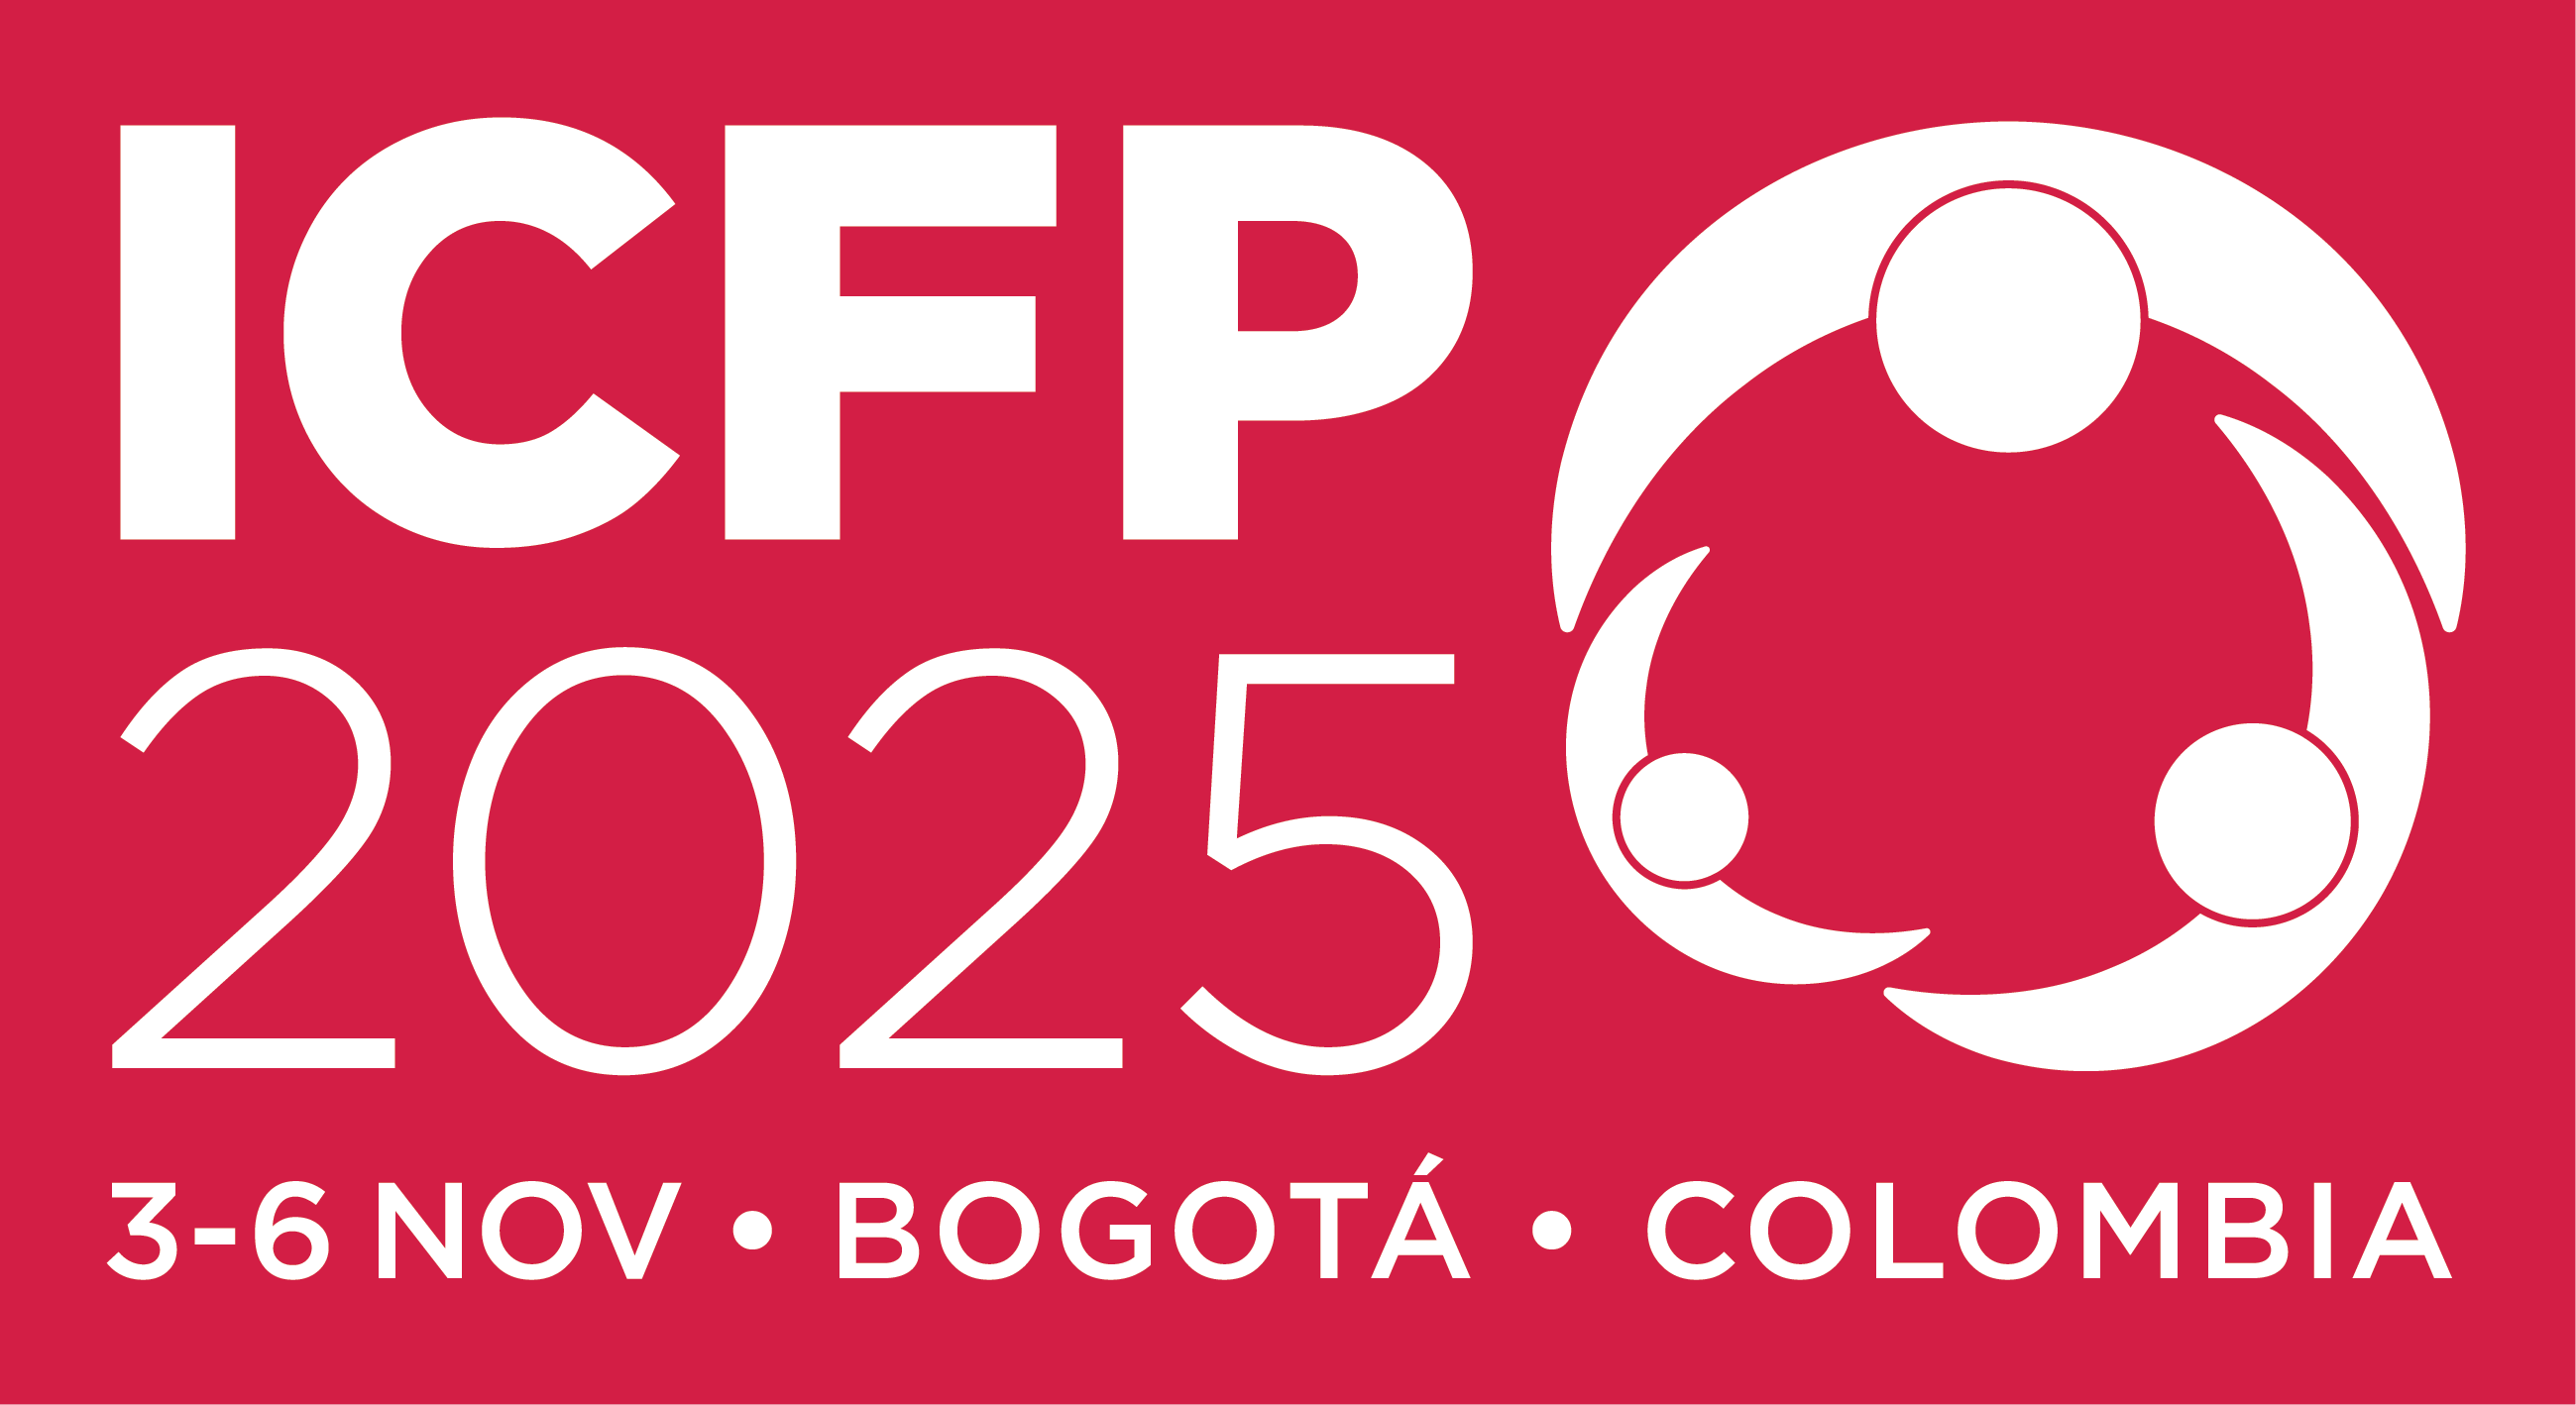 Bogotá, Colombia, hace historia como primera sede latinoamericana de la Séptima Conferencia Internacional sobre Planificación Familiar en noviembre de 2025